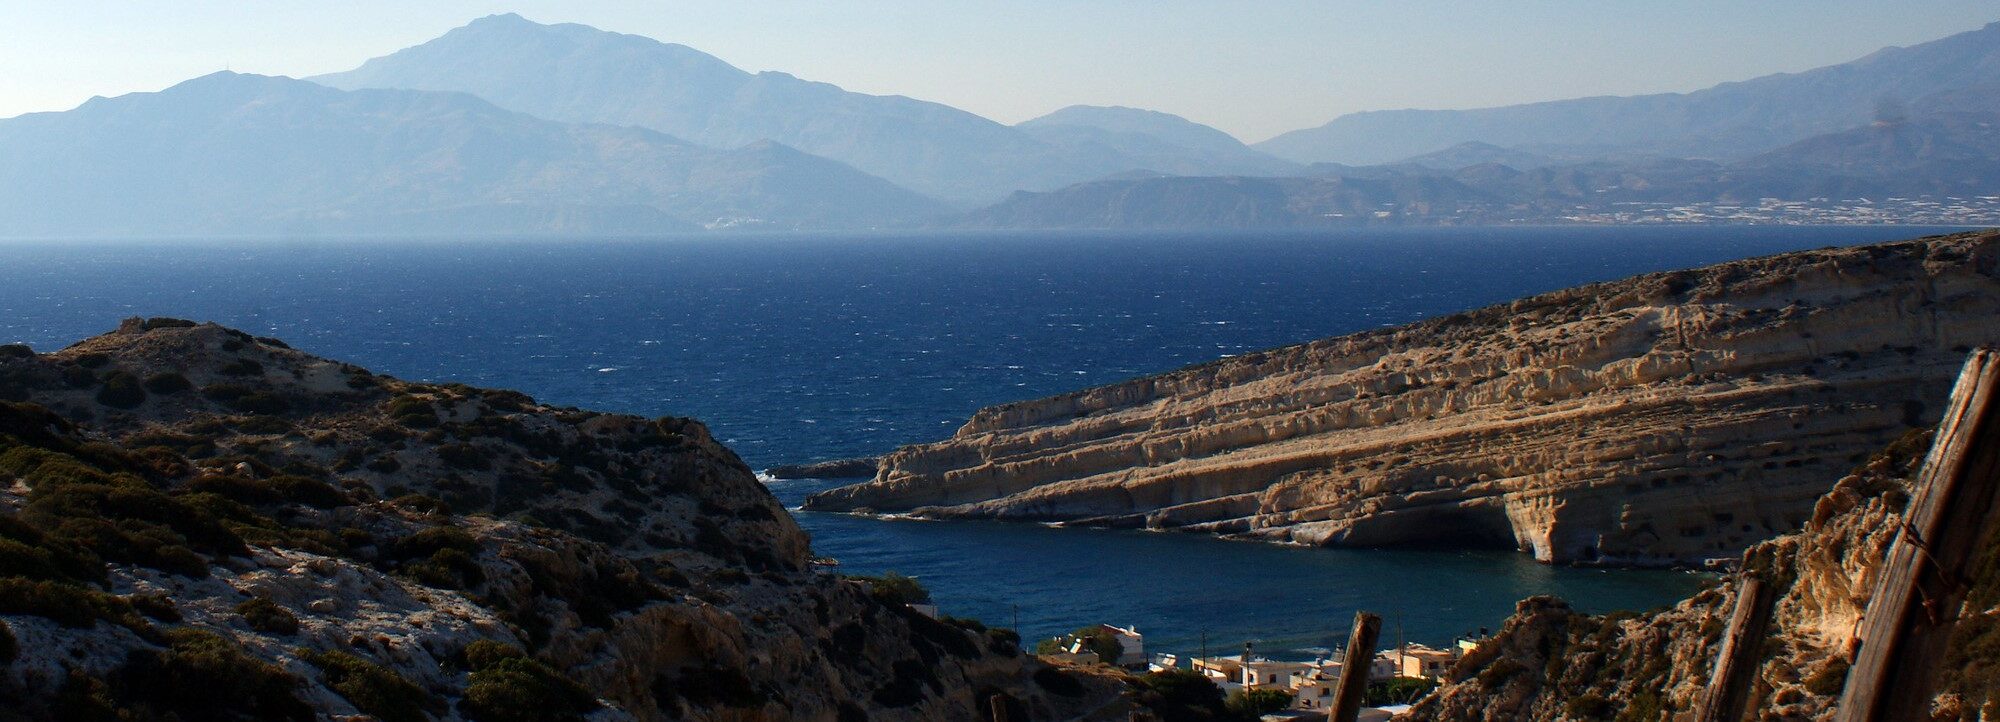 Crete - Matala